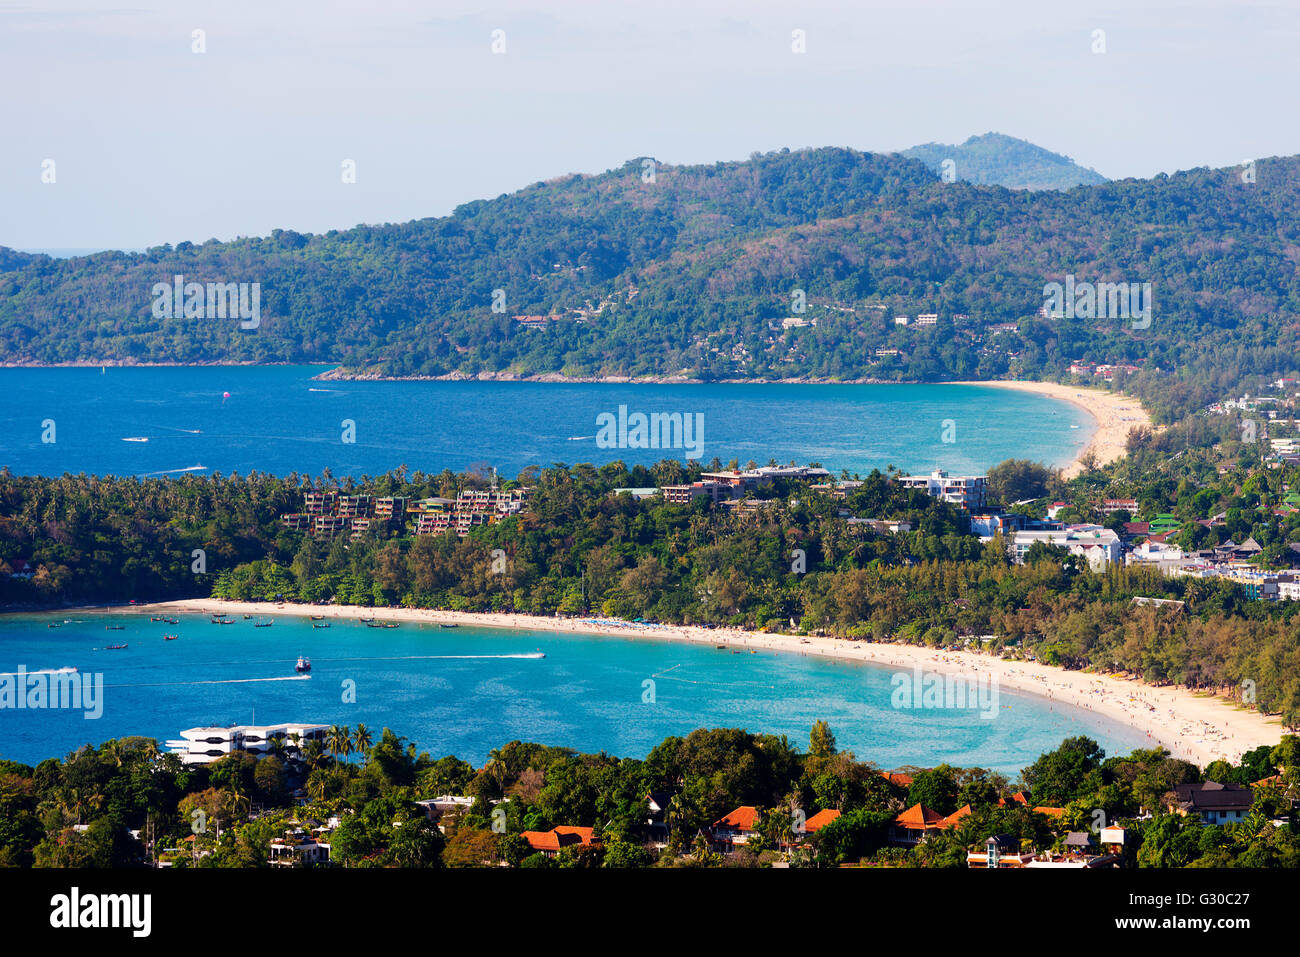 South East Asia, Thailand, Phuket, Kata beach view point Stock Photo